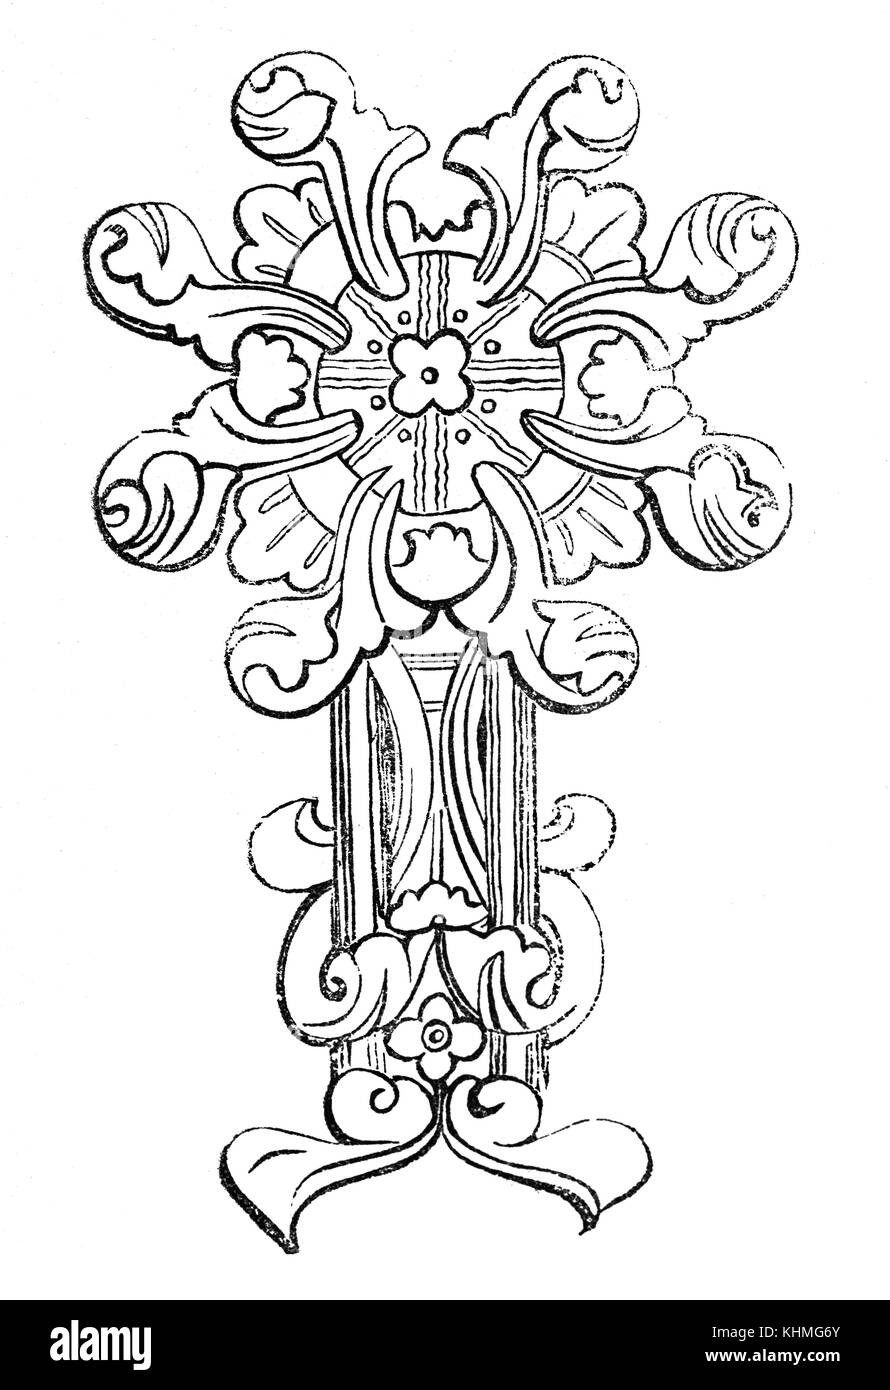 10e siècle manuscrit Anglo saxon décoratifs ornementation dans l'Angleterre médiévale. Banque D'Images